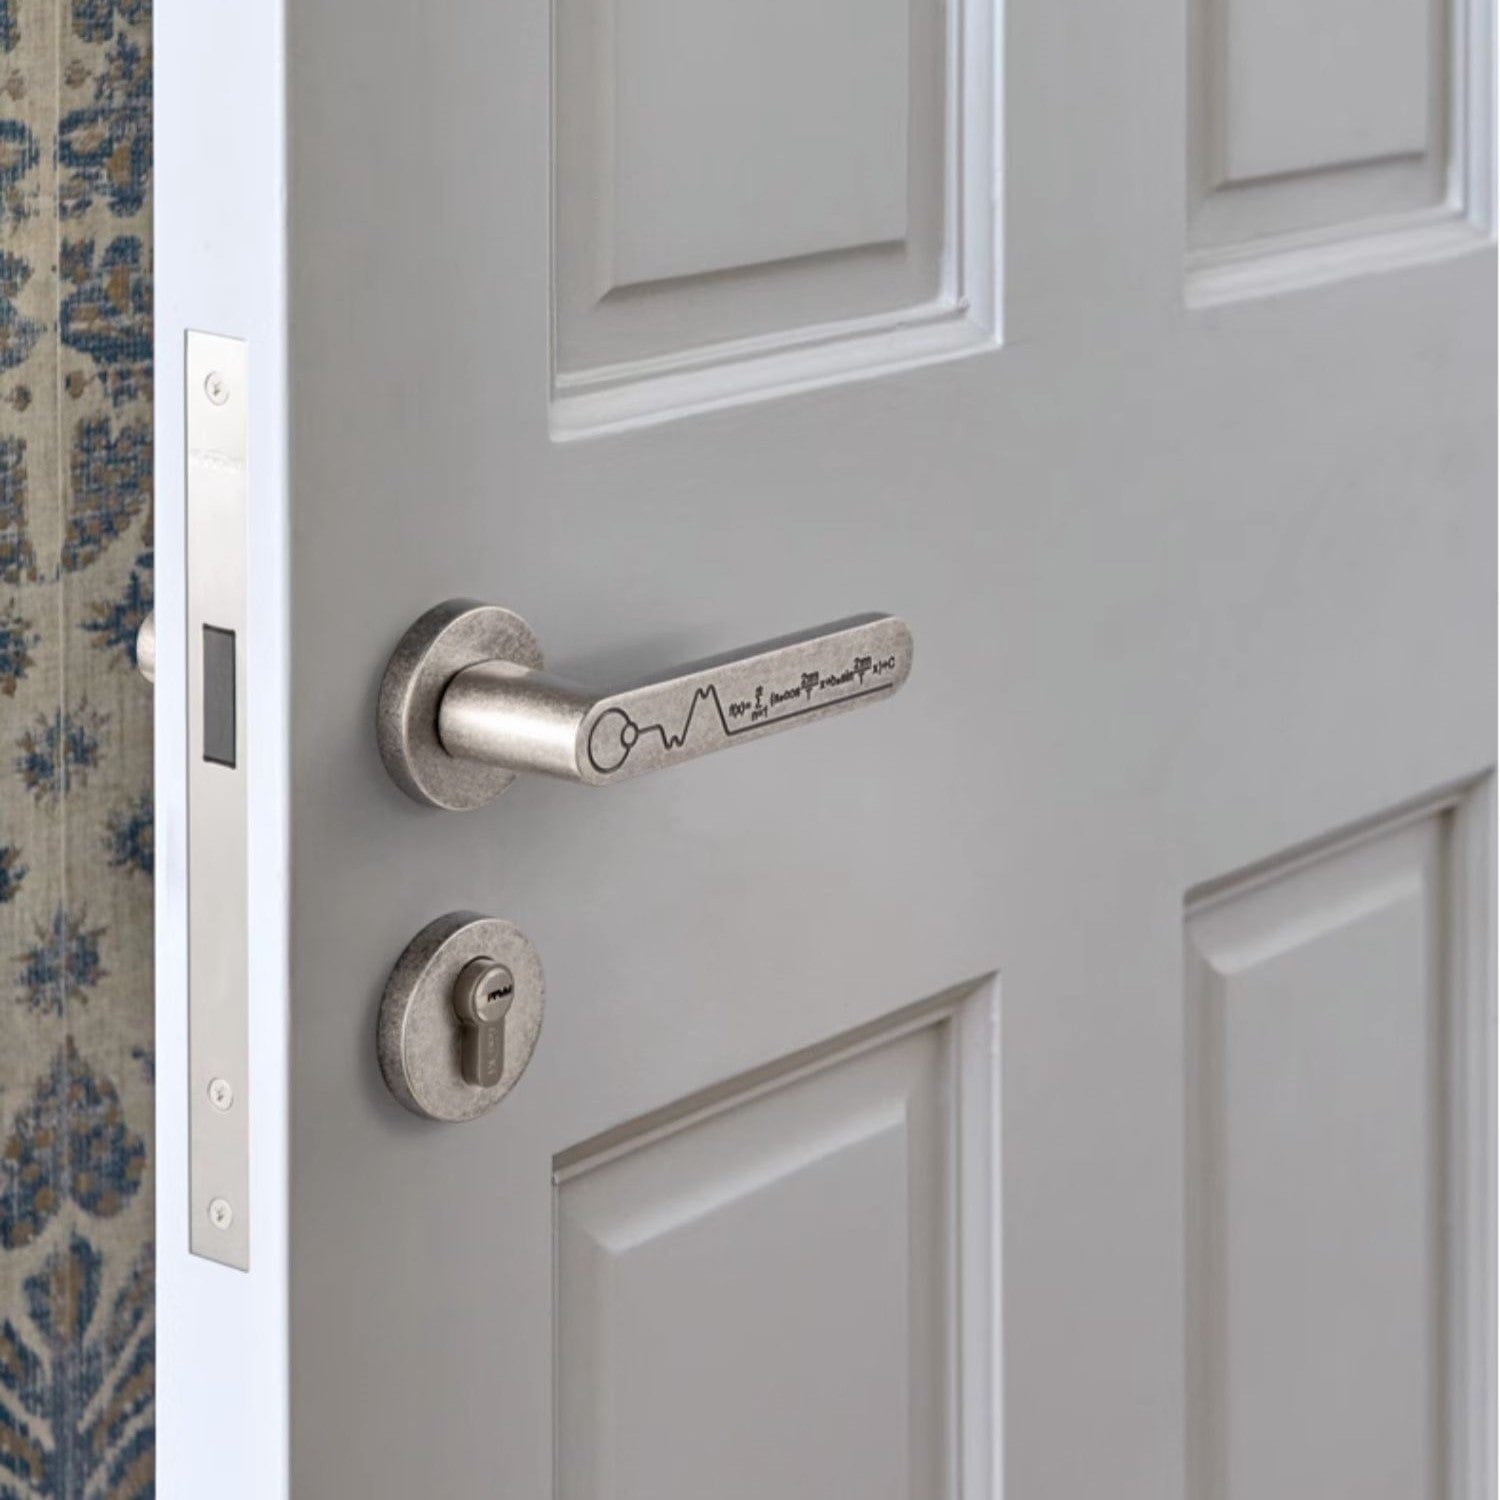 Goo-Ki Creative Design Security Door Lock Fourier Formula Silent Antique Door Lever for Children's Room